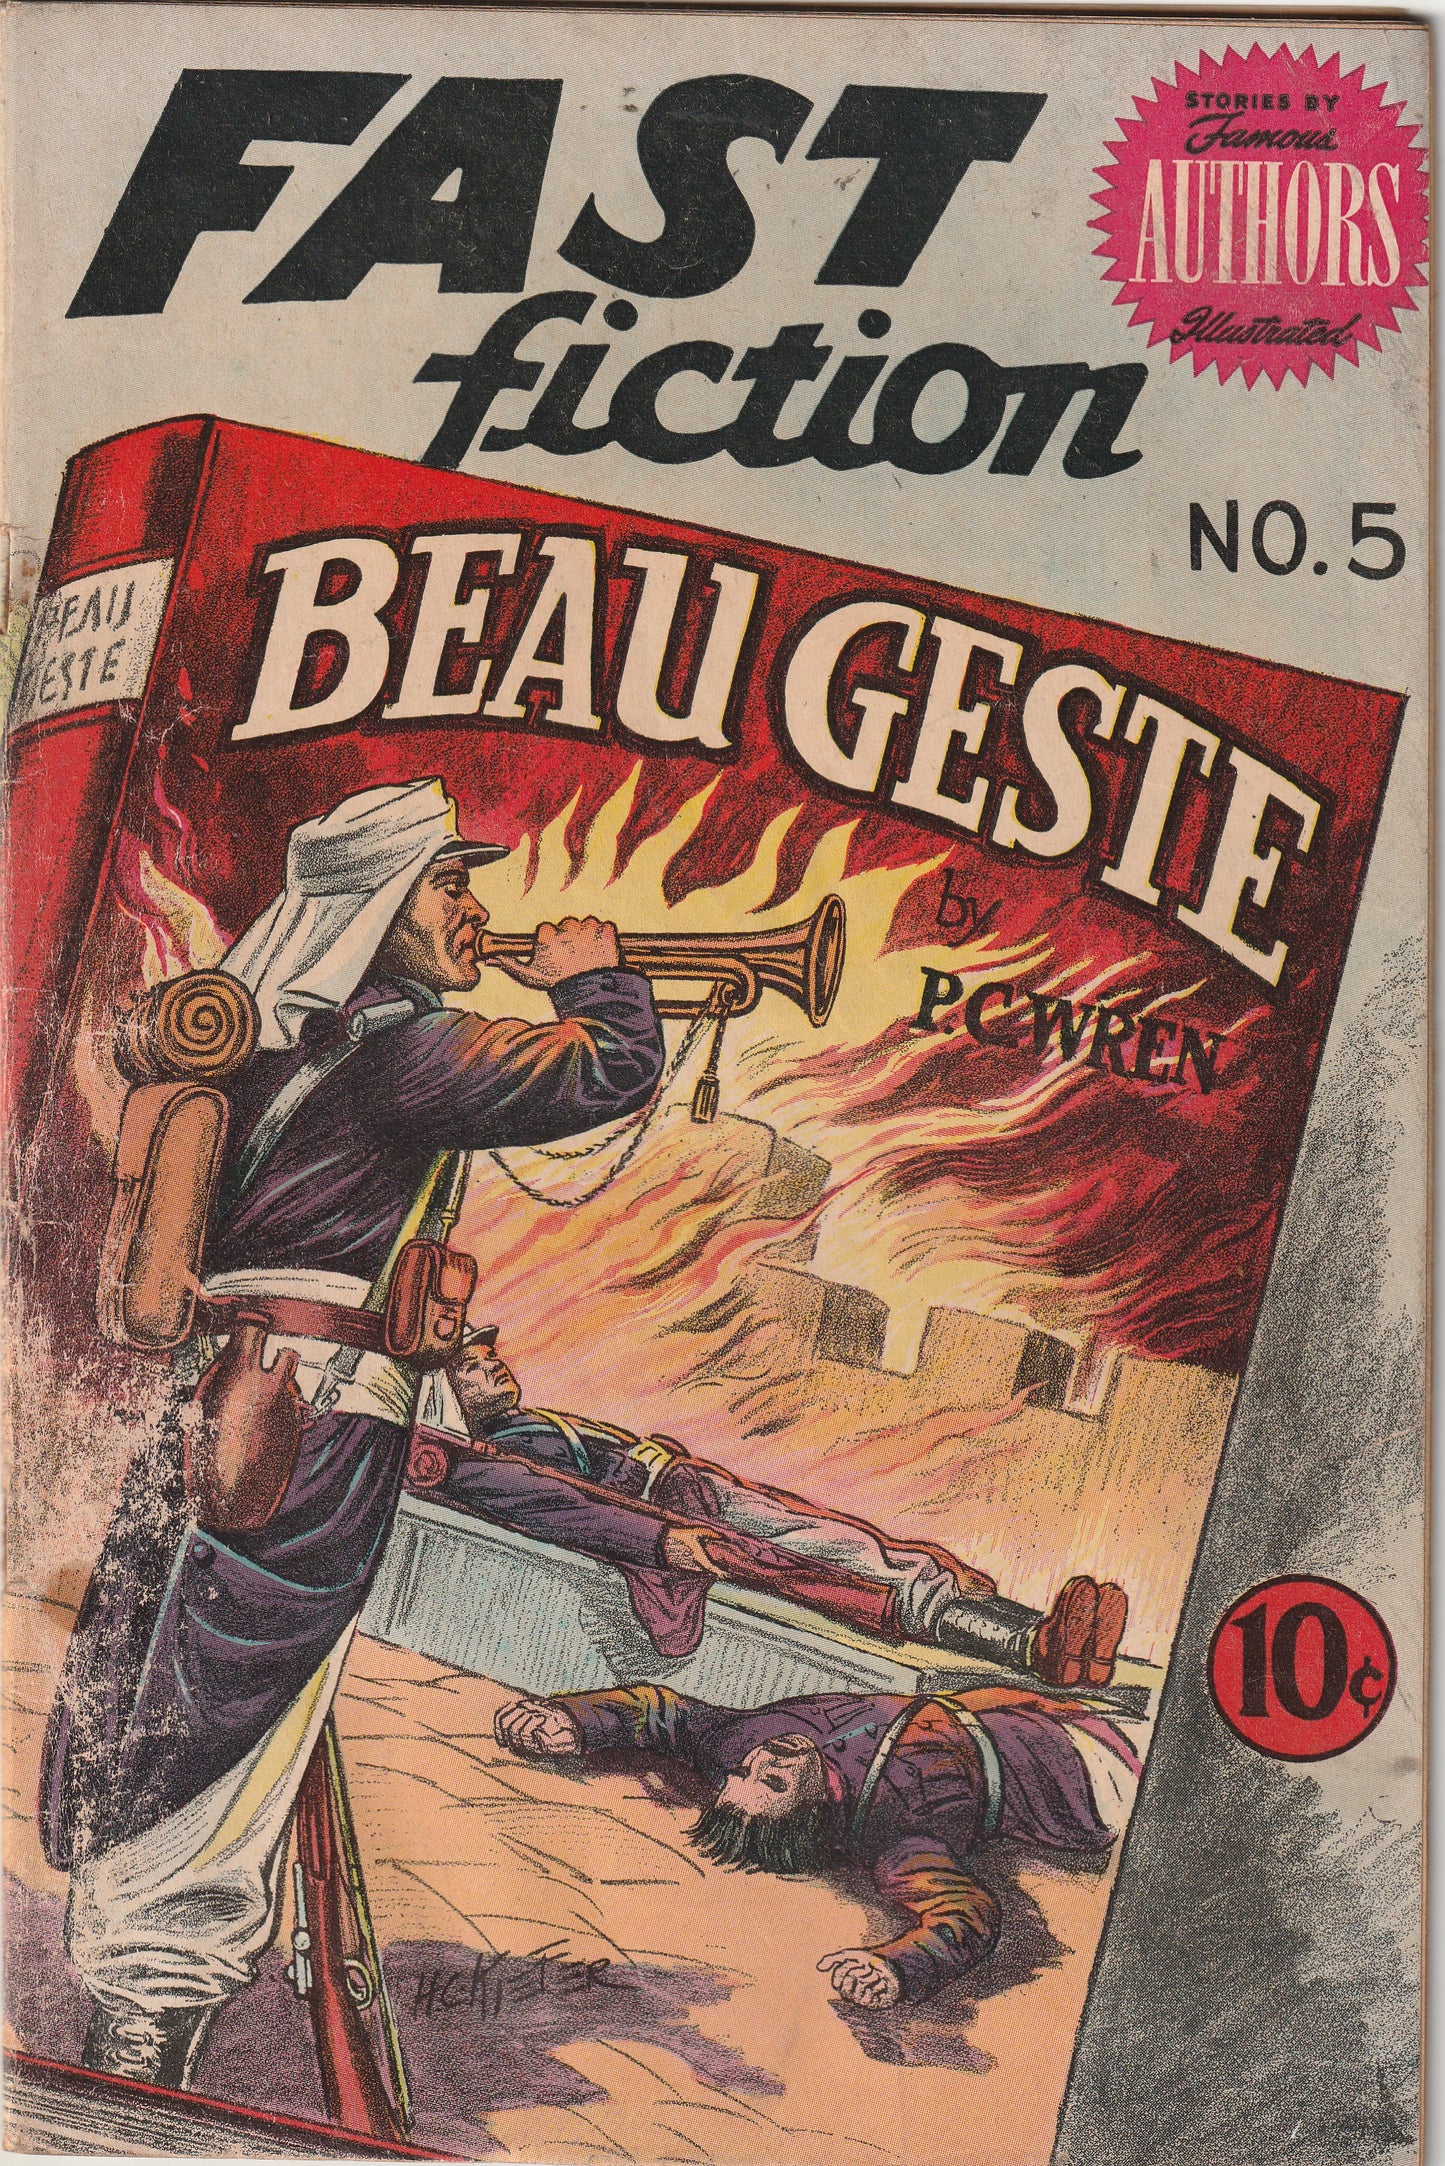 Fast Fiction #5 (1950) - Beau Geste by P.C. Wren